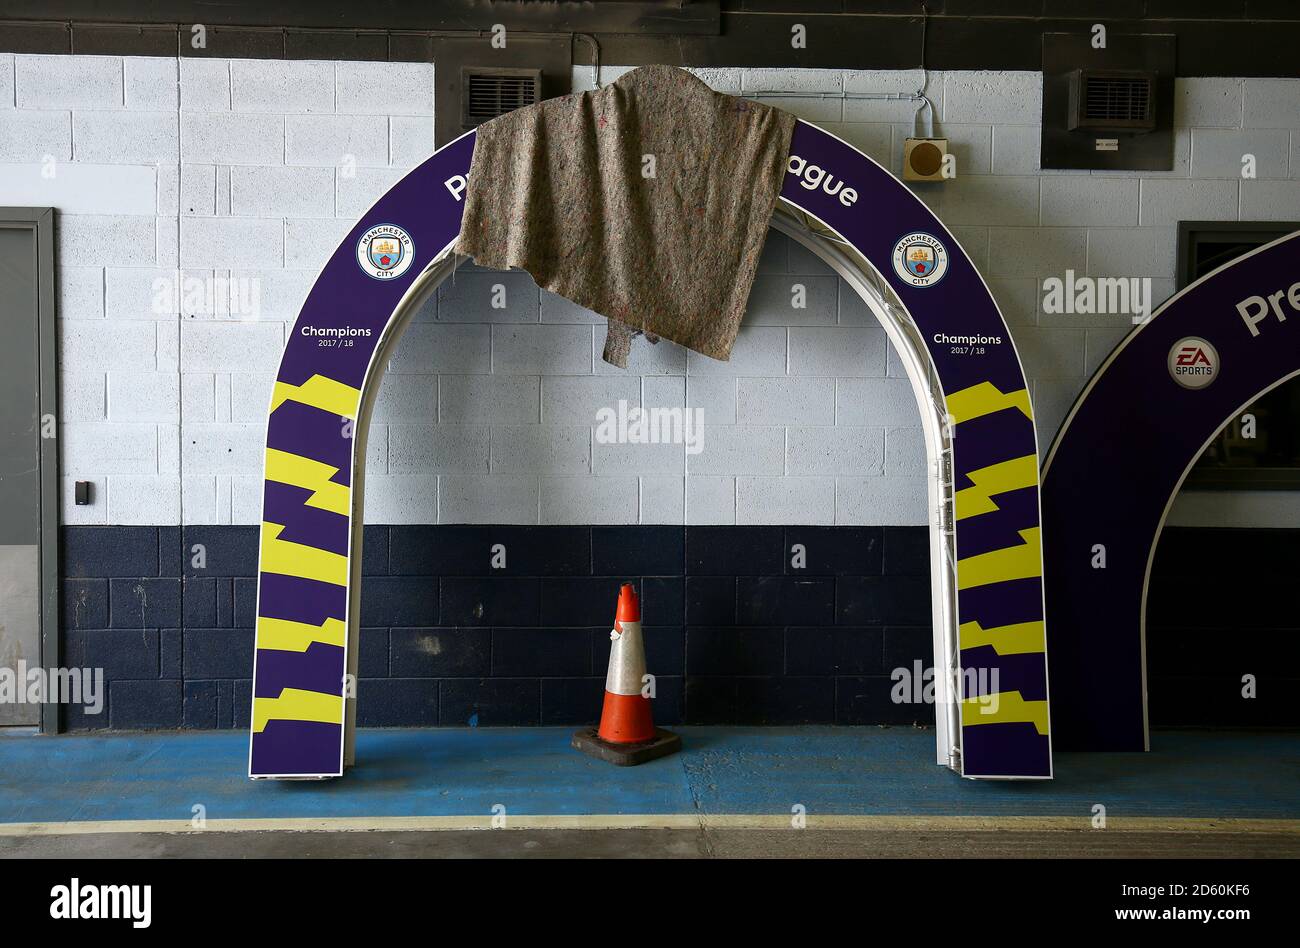 Una vista de los arcos de la Marca League en un túnel antes del juego que se utilizará en la presentación del trofeo partido el Stadium. El trofeo